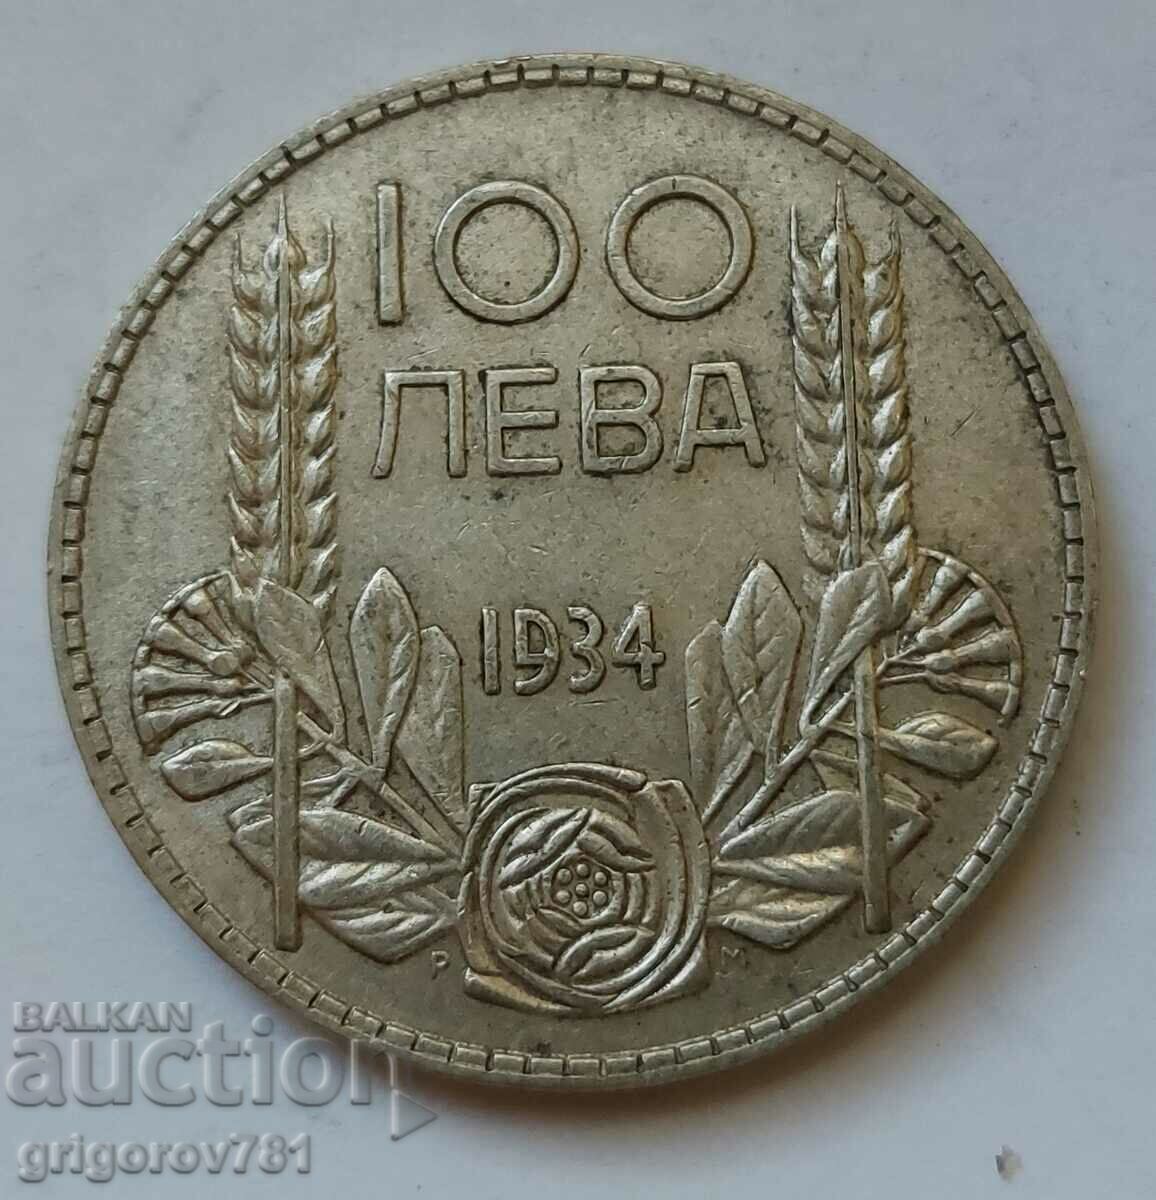 100 leva argint Bulgaria 1934 - monedă de argint #126